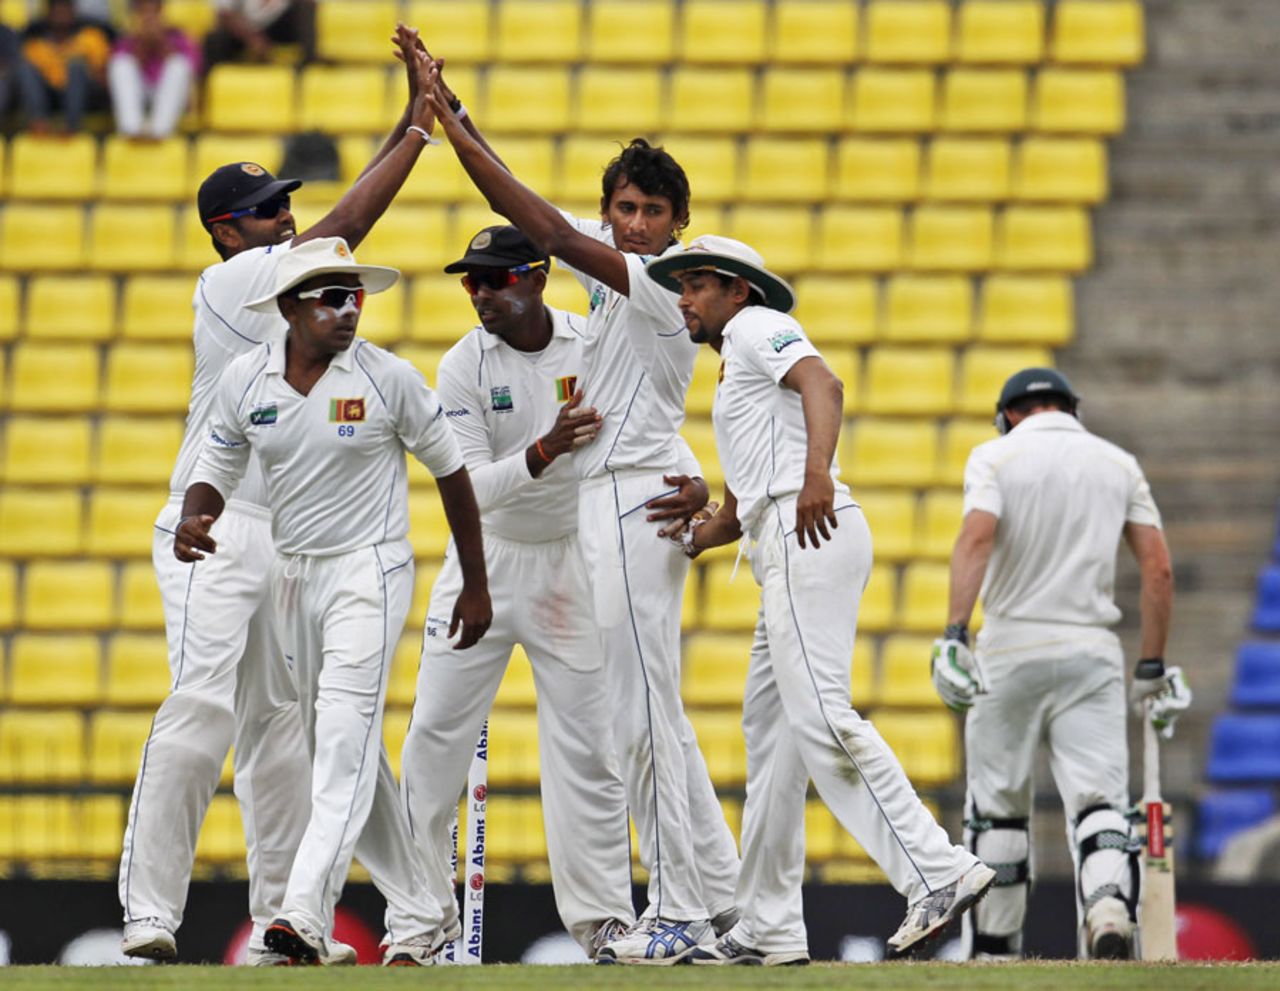 Sri Lanka get together after Shaun Marsh's dismissal, Sri Lanka v Australia, 2nd Test, Pallekele, 3rd day, September 10, 2011